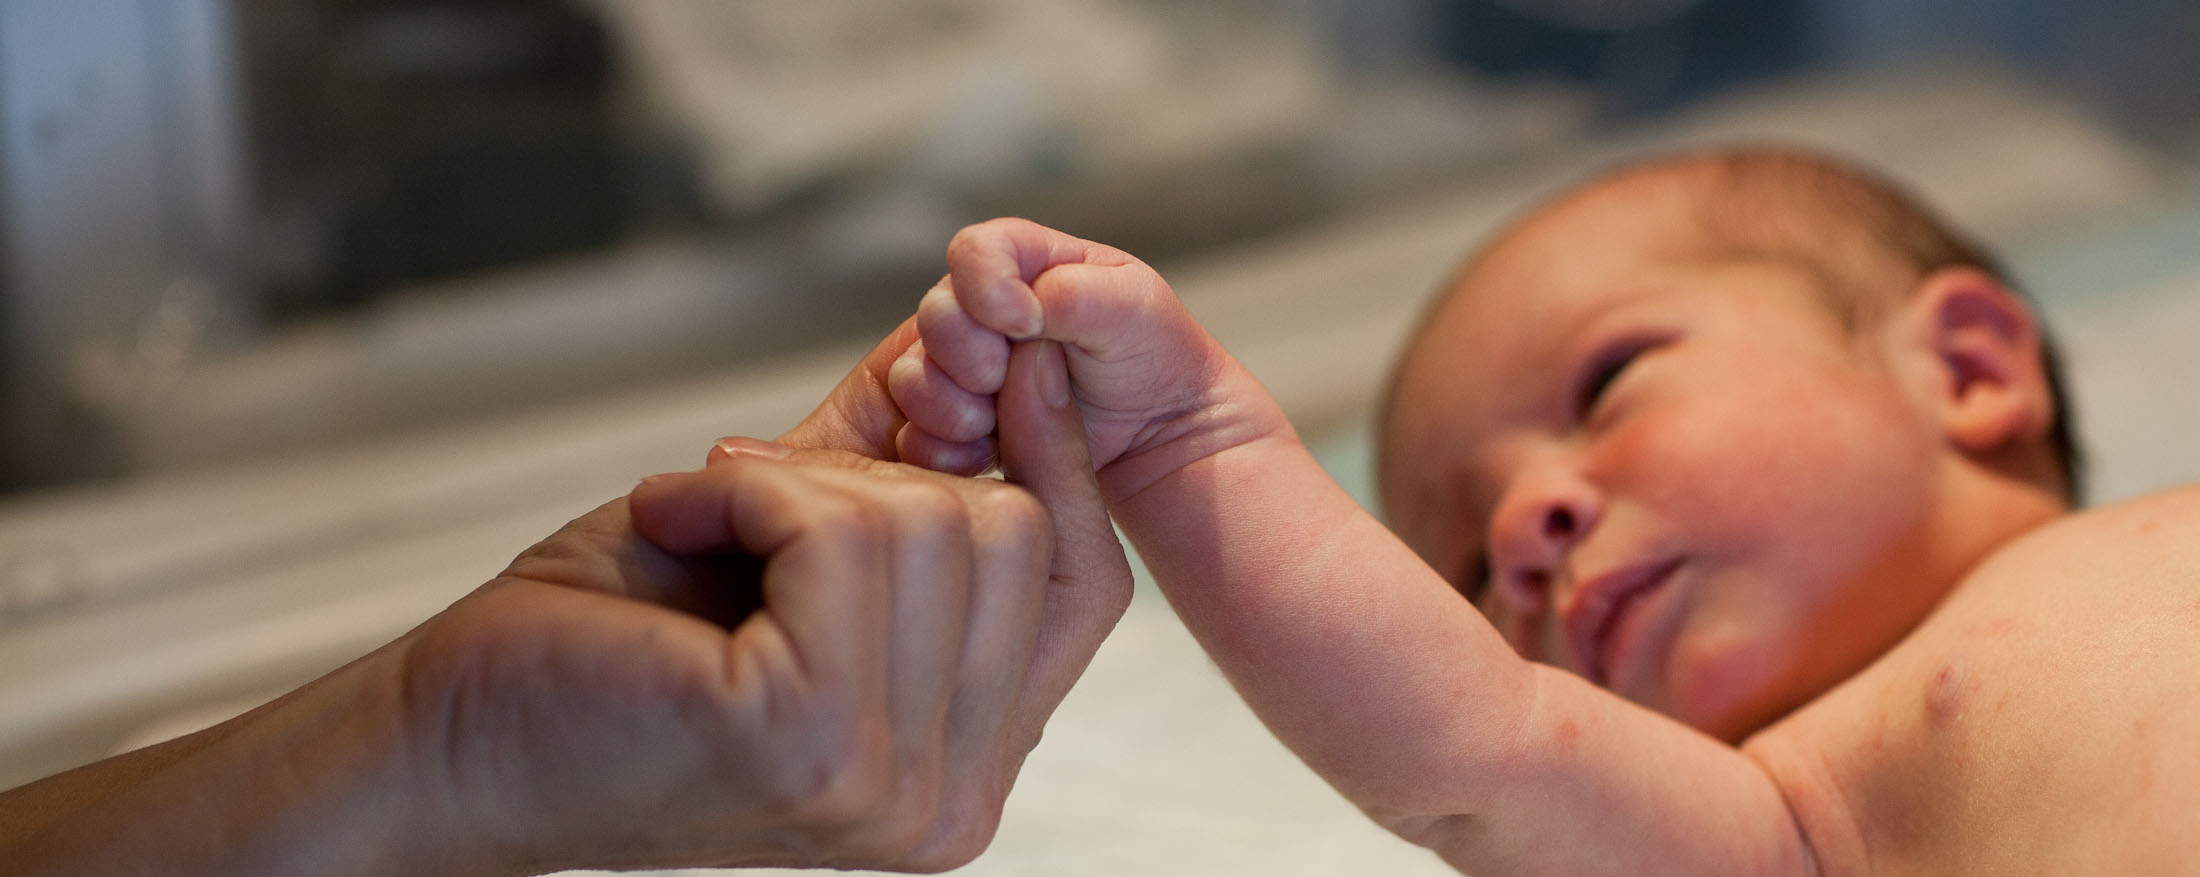 Un adulto sosteniendo suavemente la mano de un recién nacido